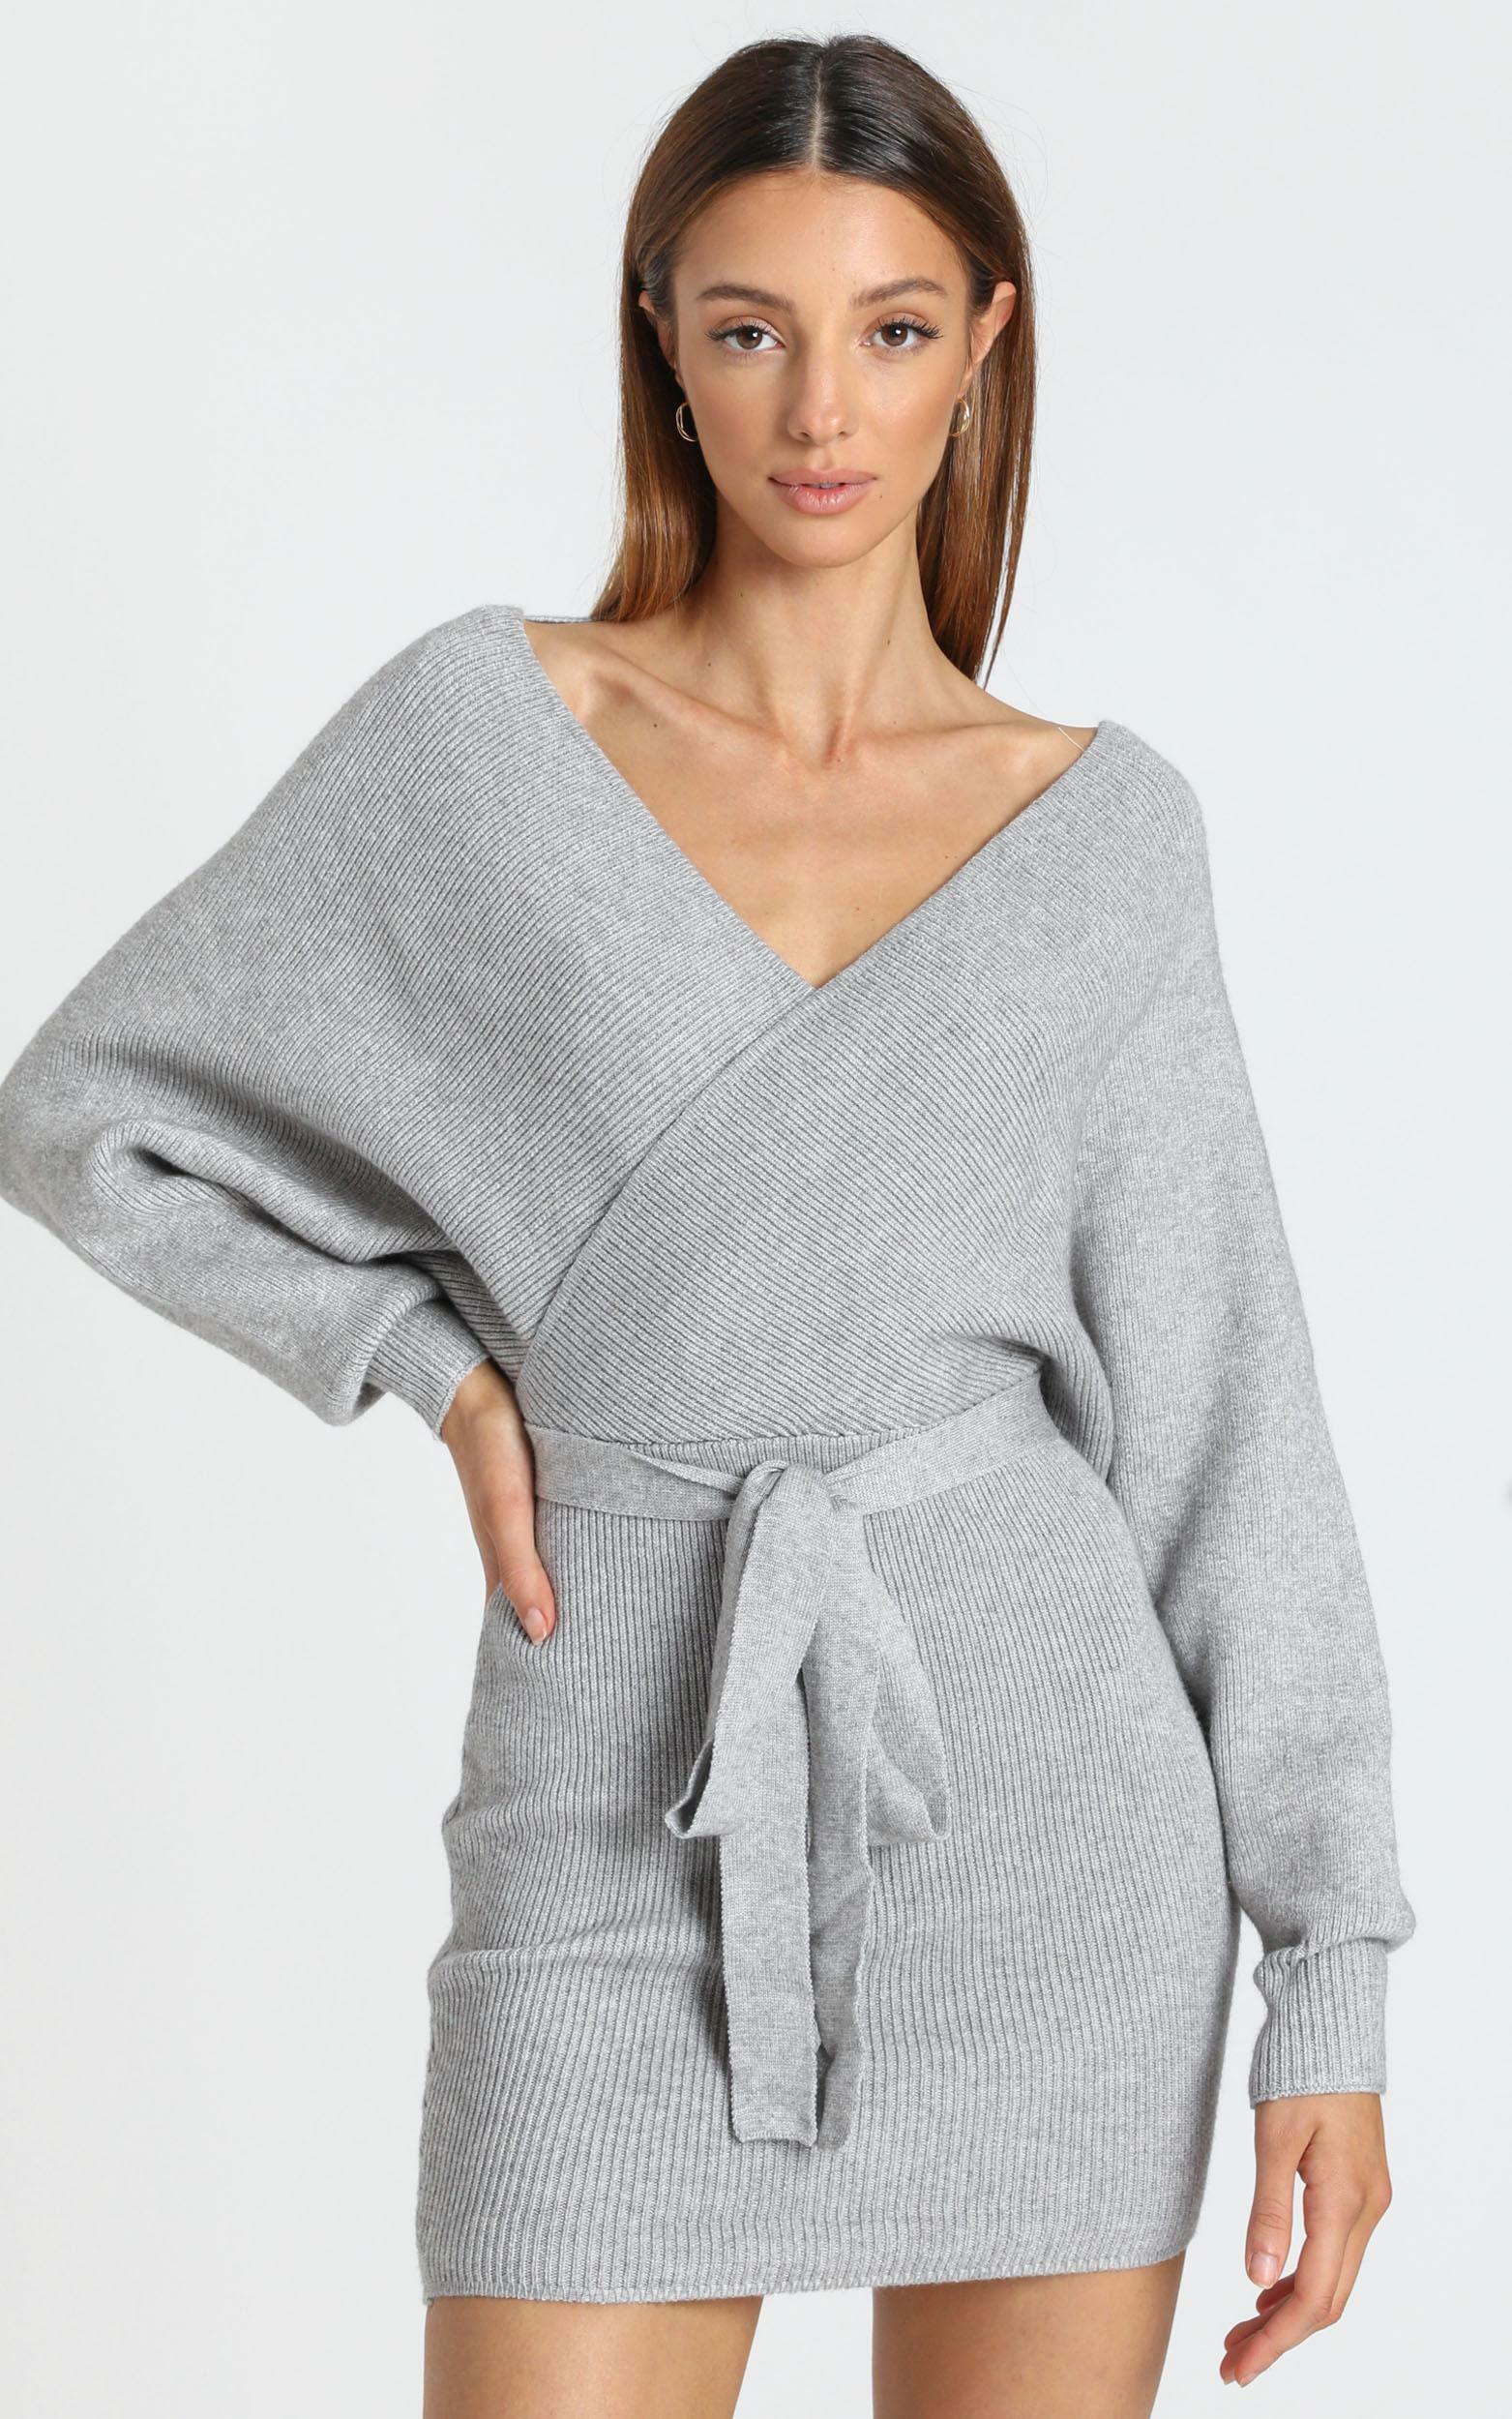 grey knit dress